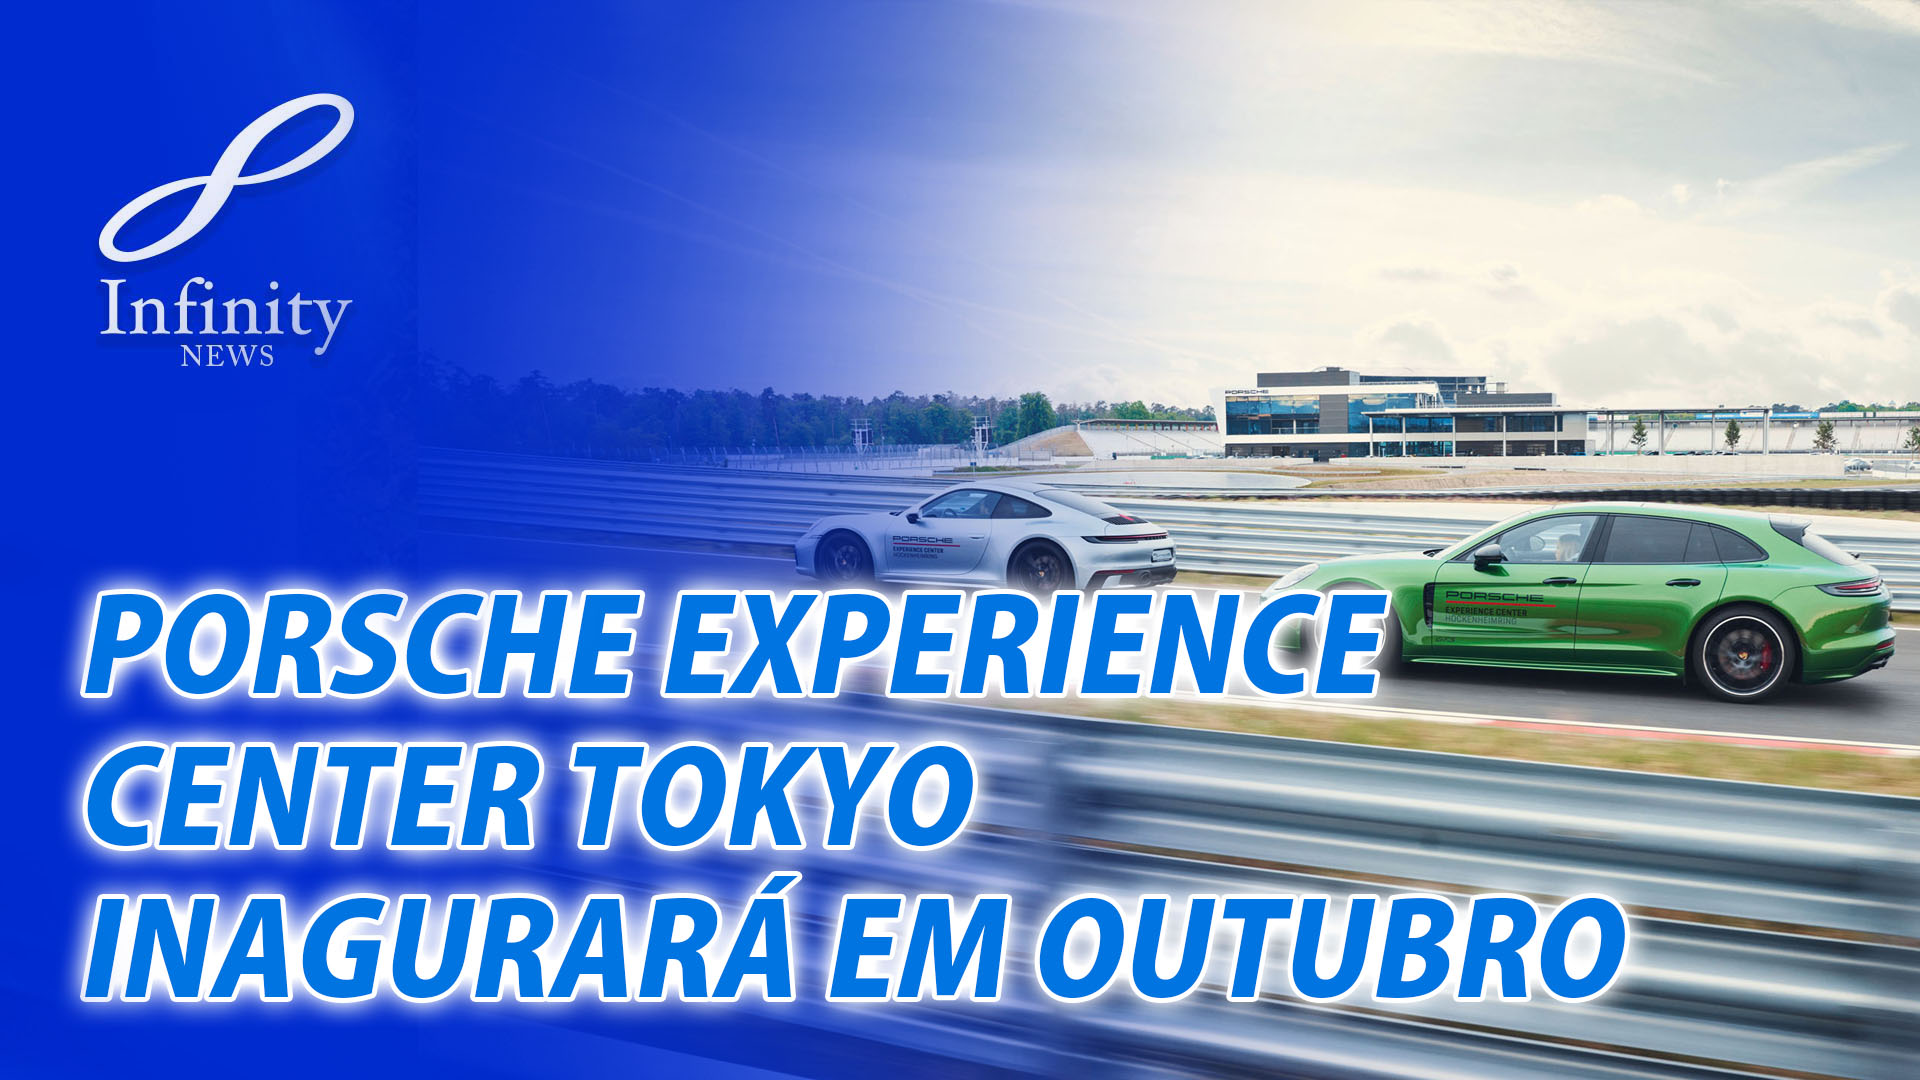 Porsche Experience Center Tokyo Inaugurará Em Outubro